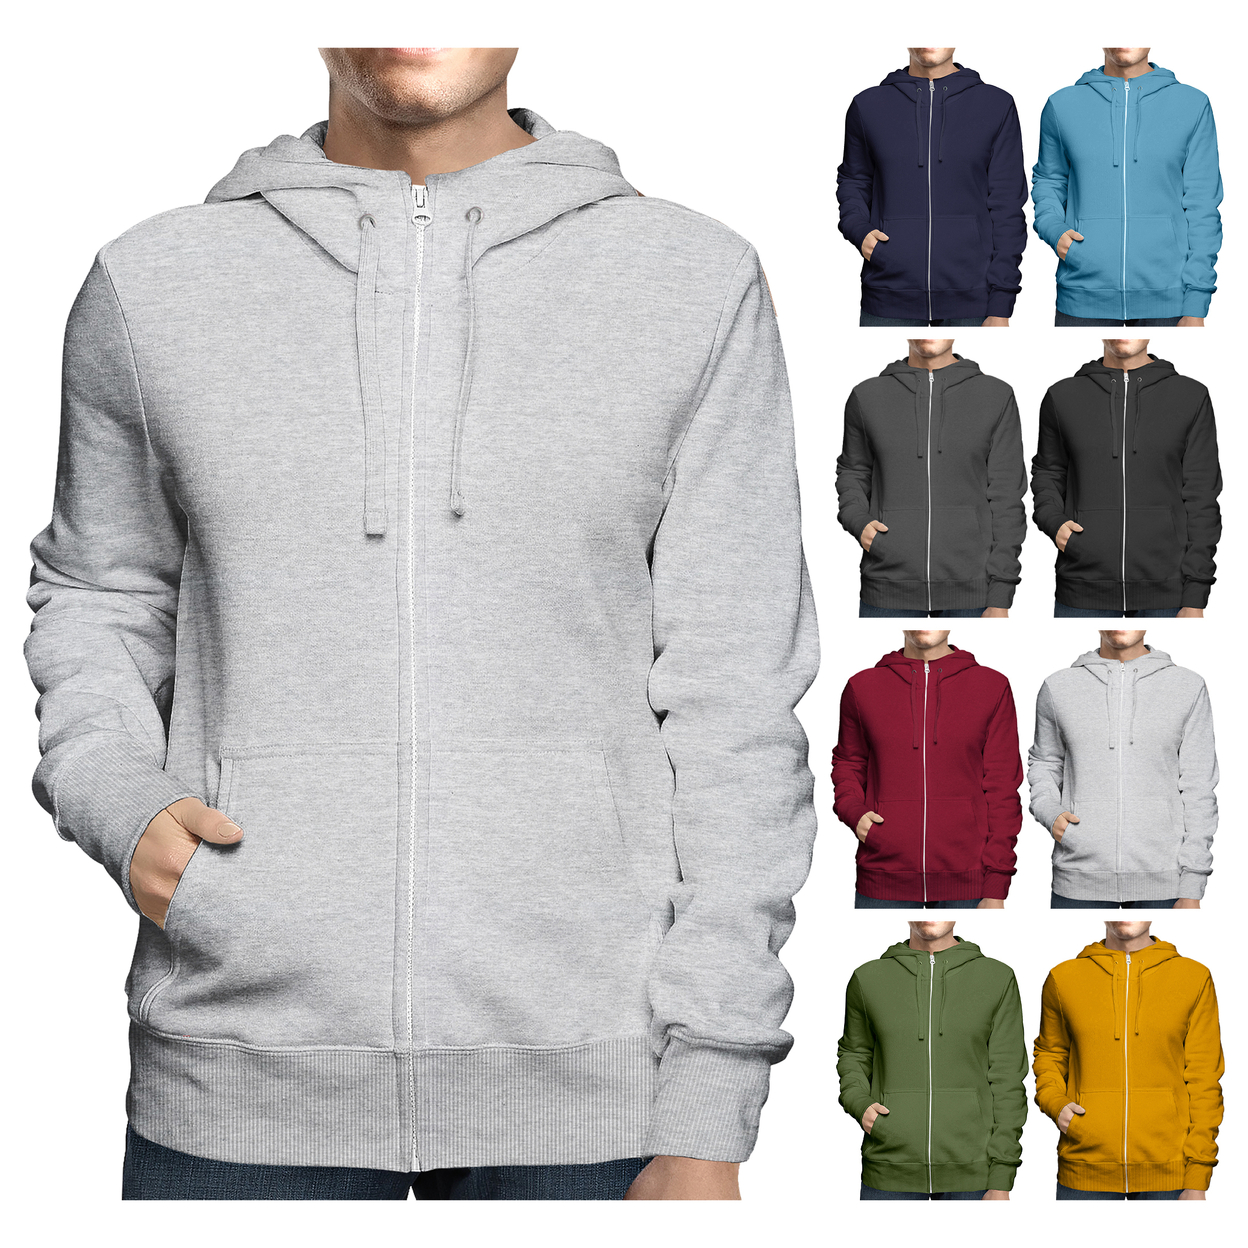 2-Pack: Men's Winter Warm Soft Full Zip-Up Fleece Lined Hoodie Sweatshirt - Black & Navy, Small